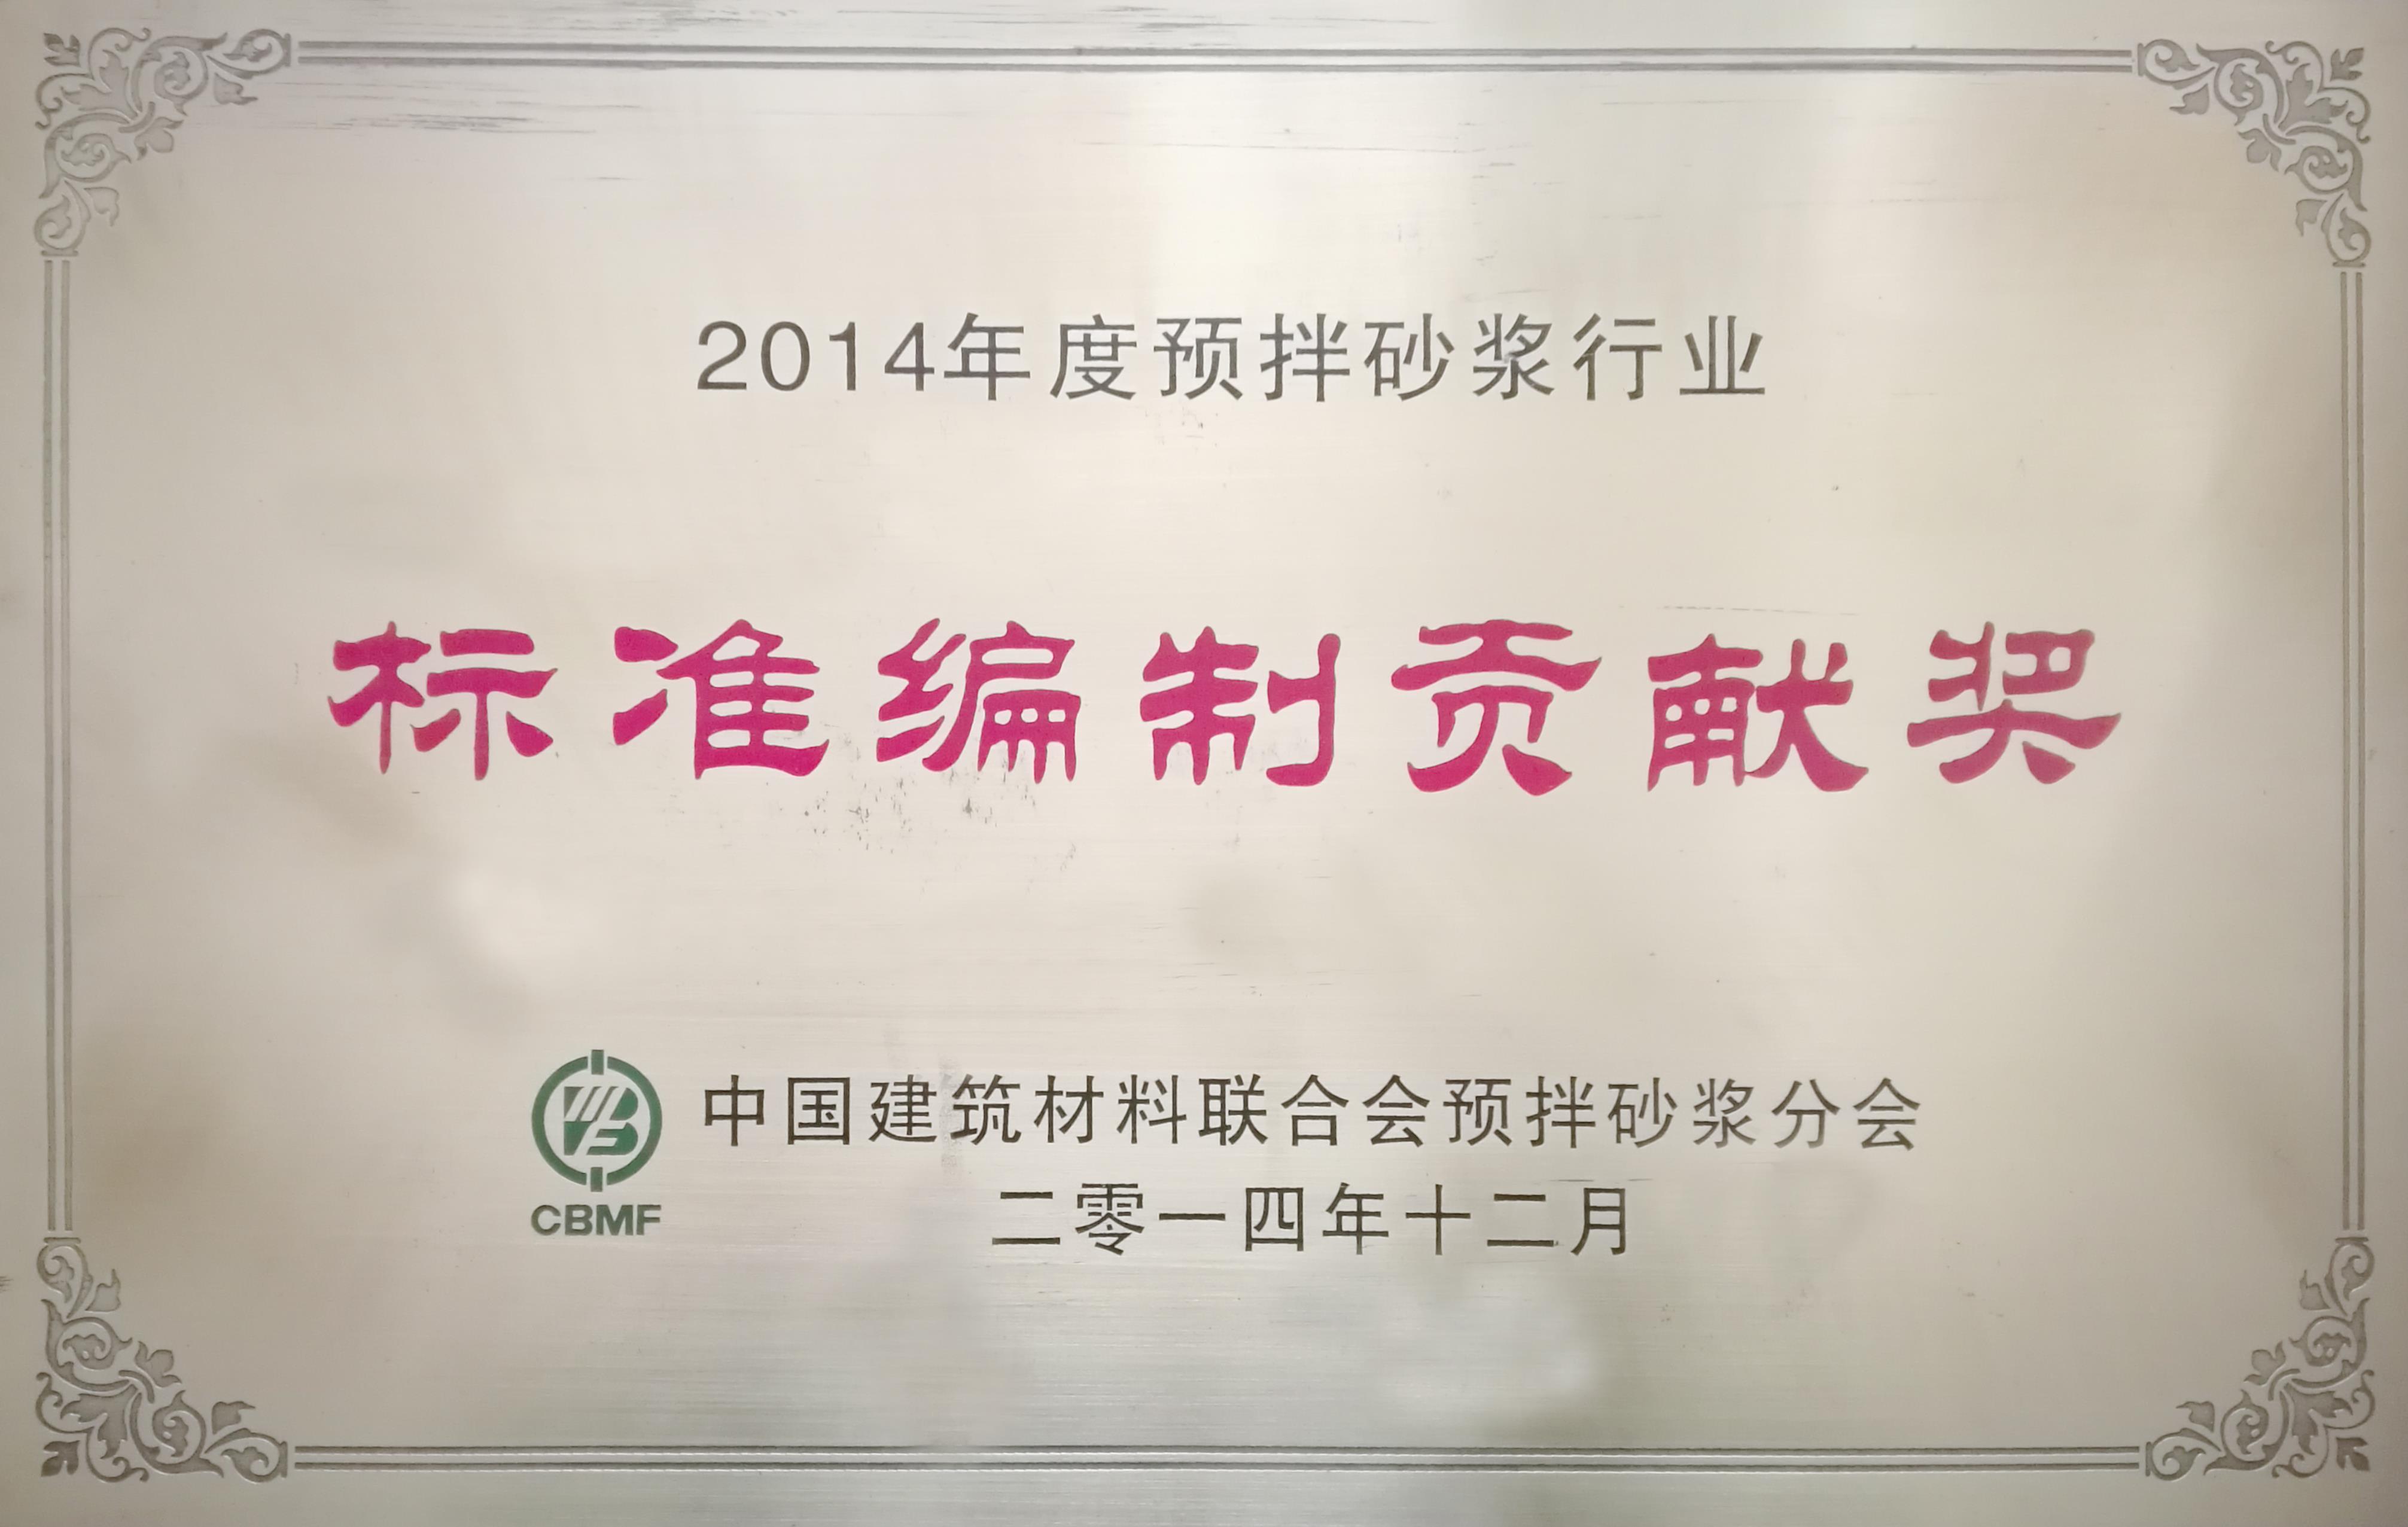 2014年预拌砂浆行业标准编制贡献奖